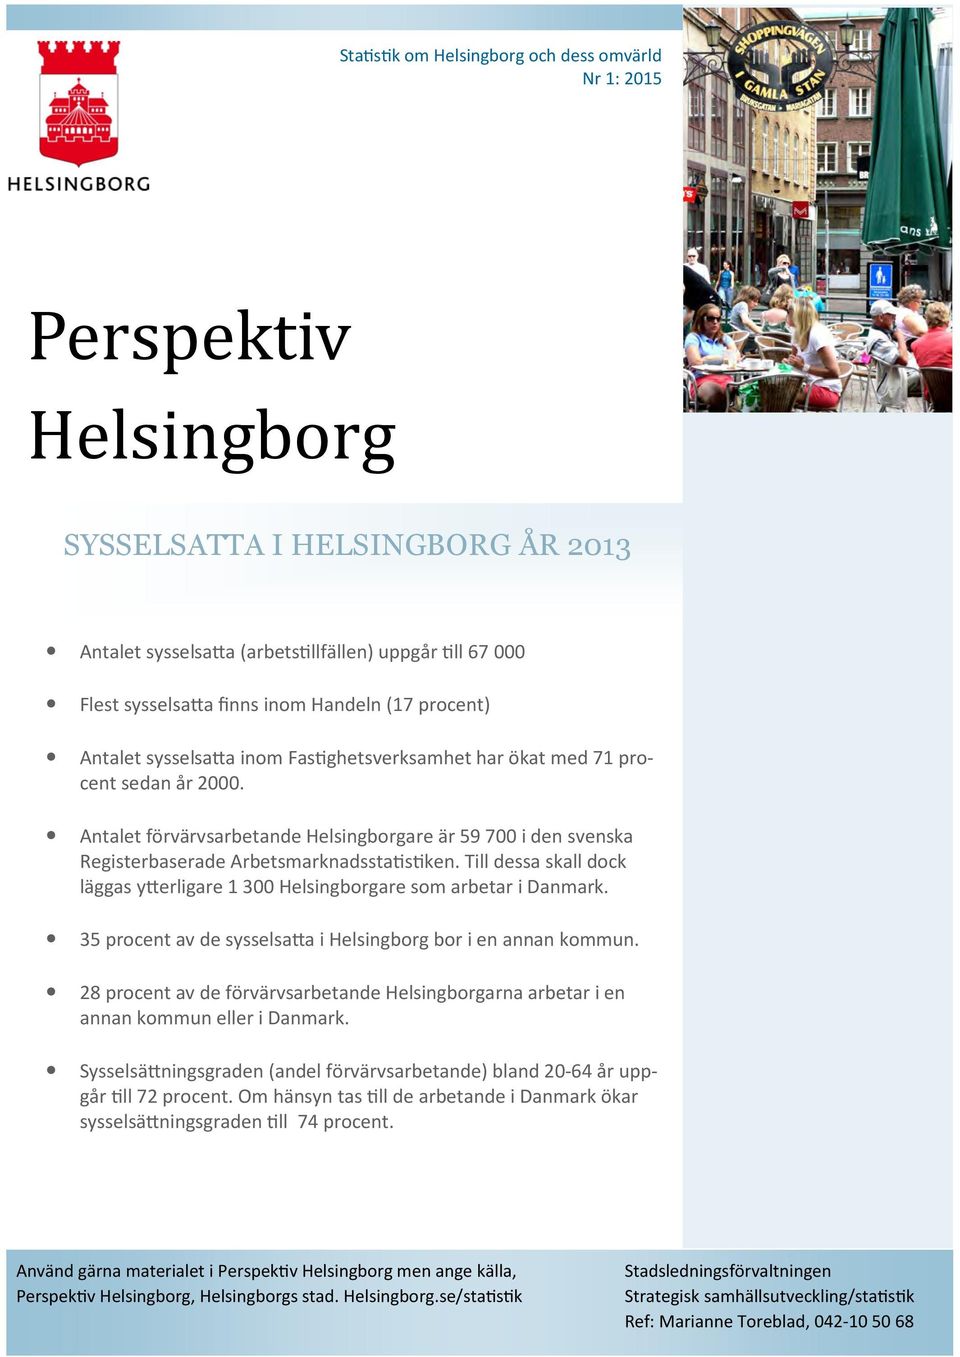 Antalet förvärvsarbetande Helsingborgare är 59 700 i den svenska Registerbaserade Arbetsmarknadssta s ken. Till dessa skall dock läggas y erligare 1 300 Helsingborgare som arbetar i Danmark.